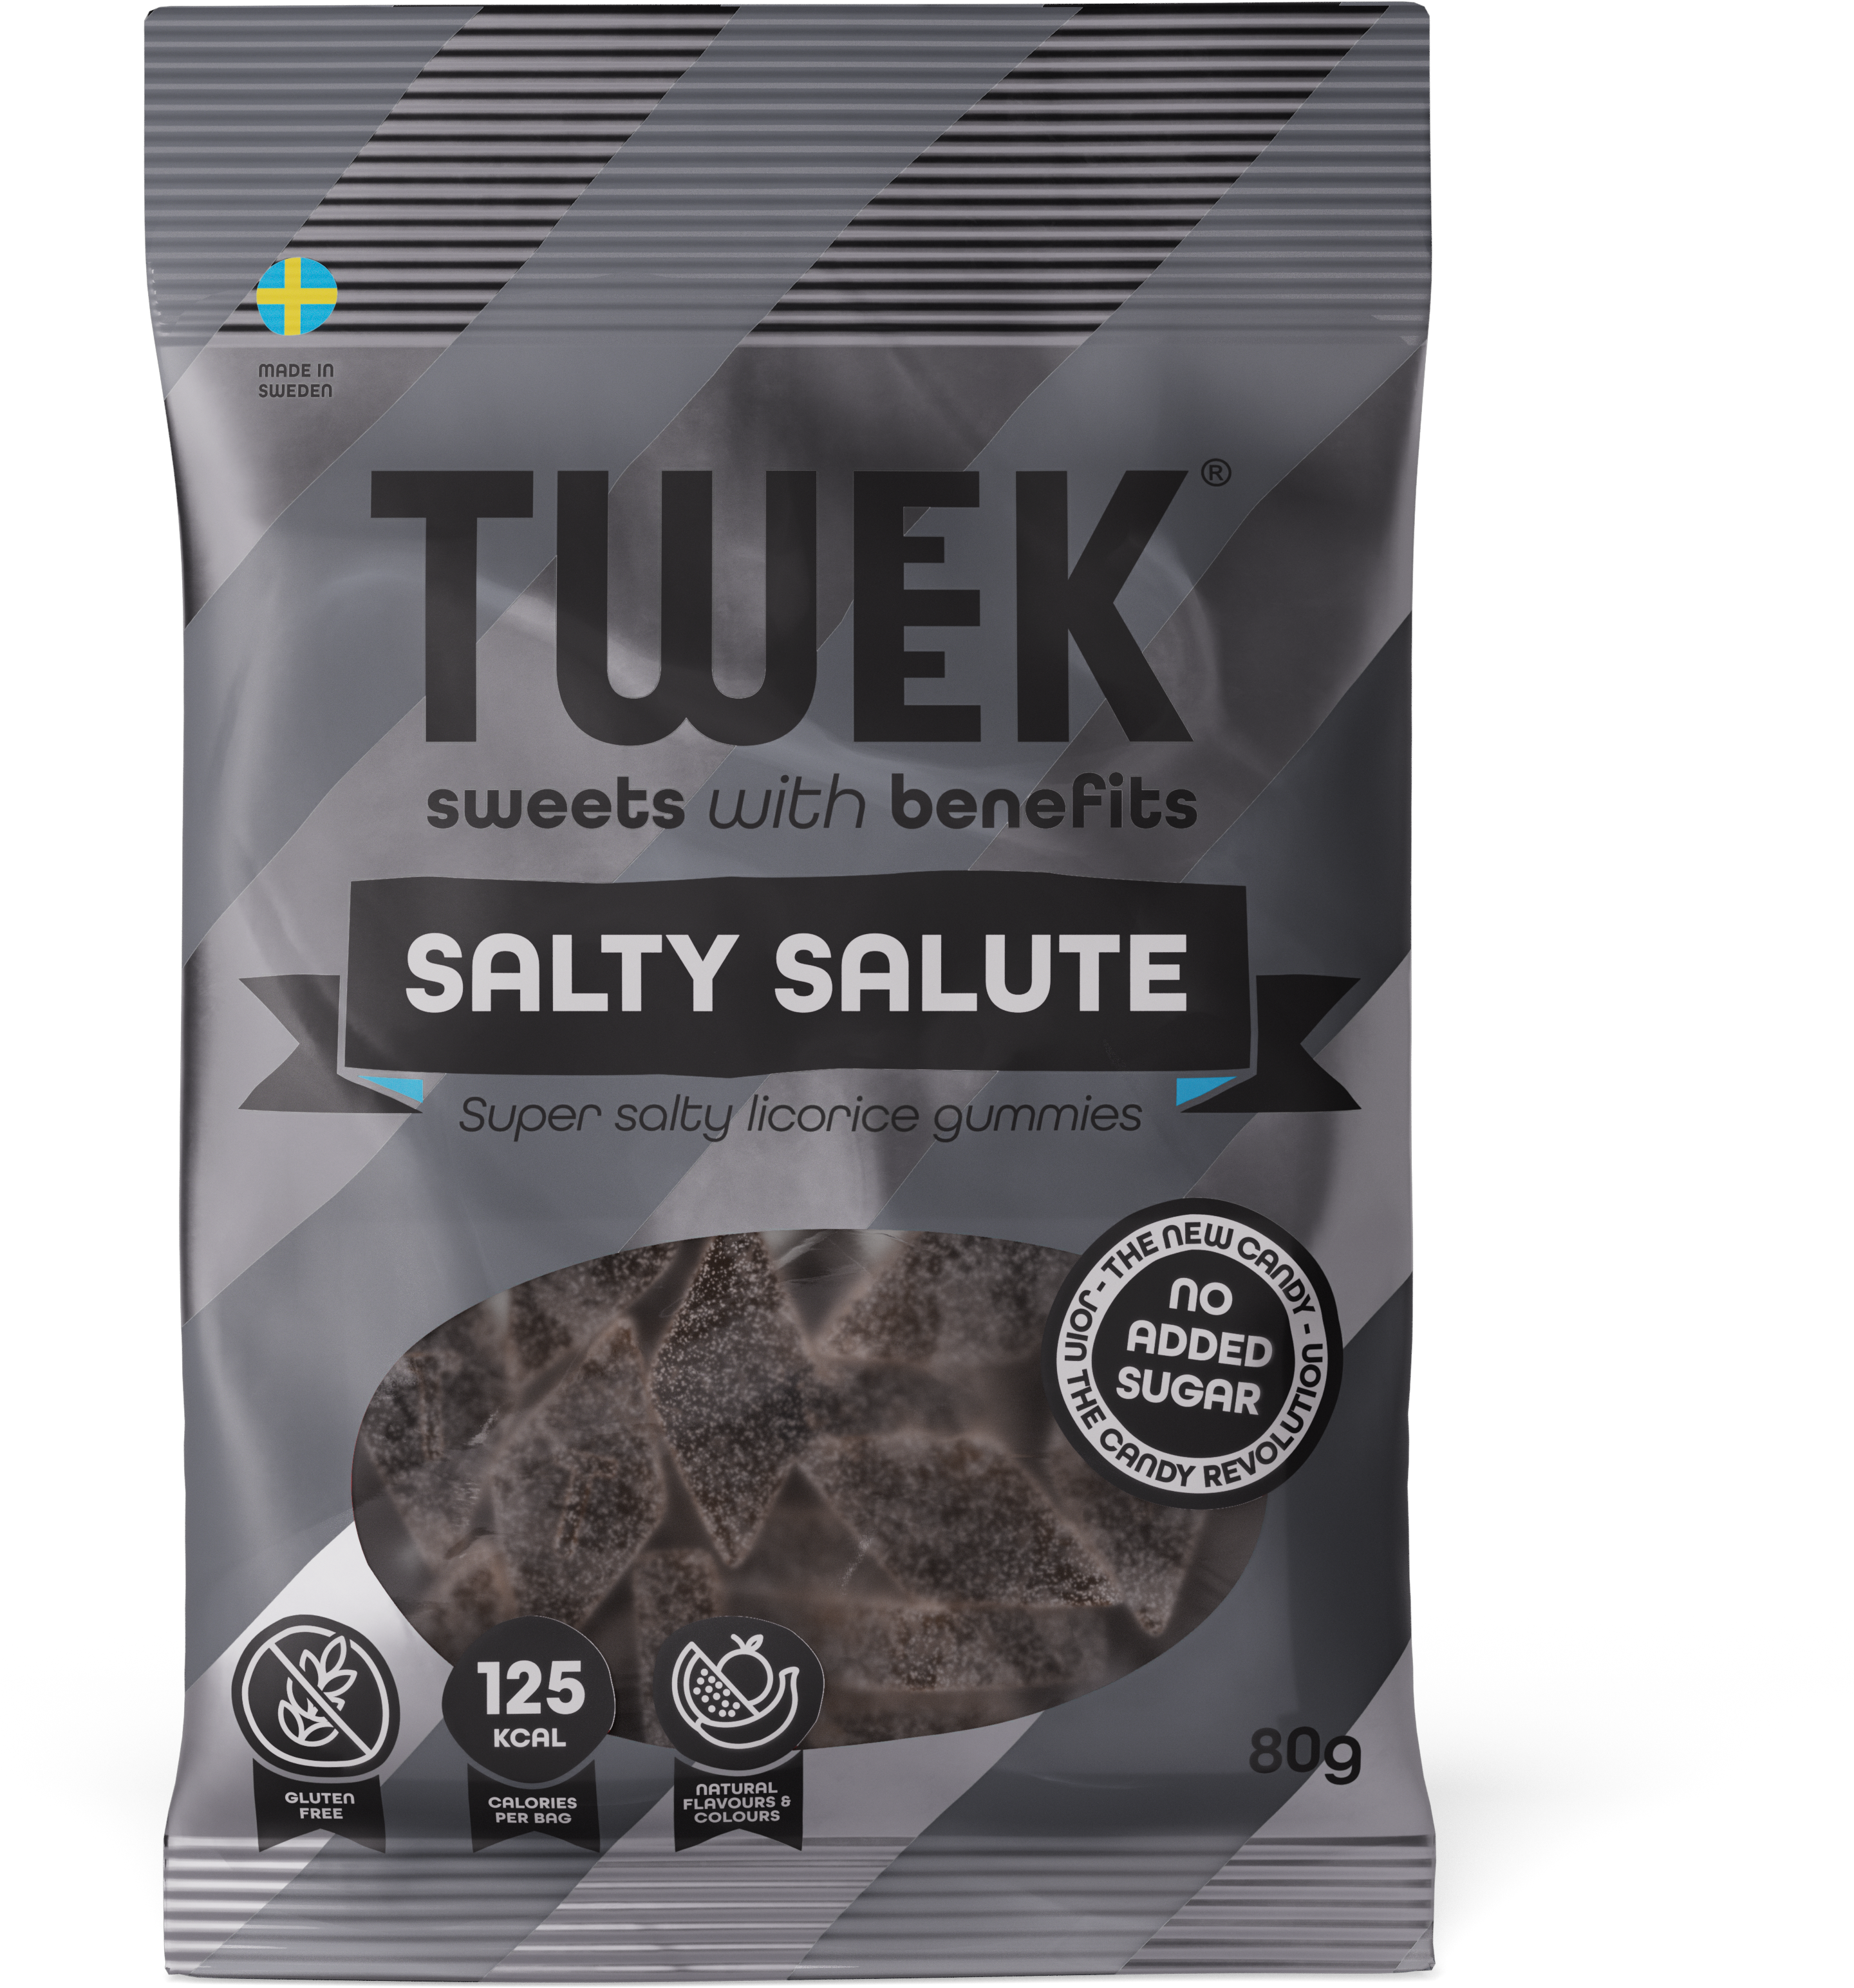 Tweek-SaltySalute